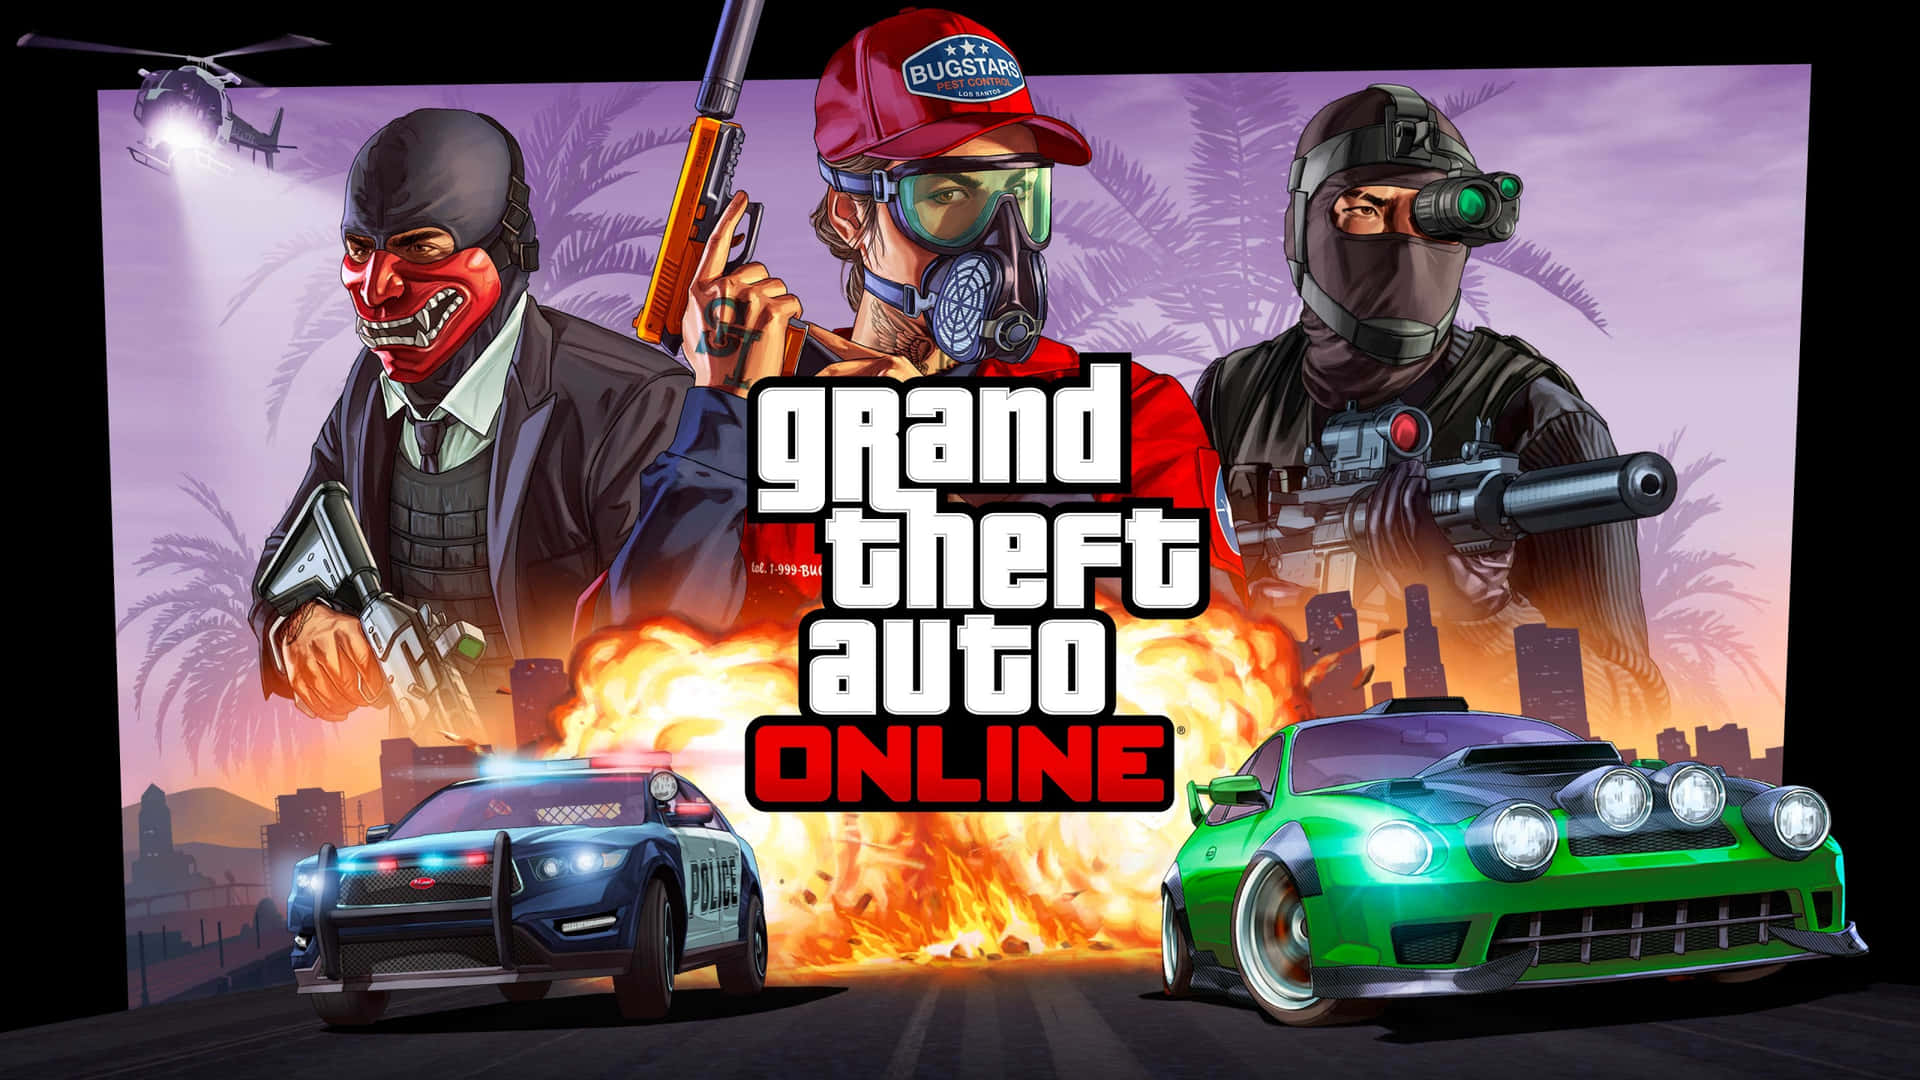 Grand Theft Auto Online - Gta Online - Gta Online - Gta Online - Gta Online Wallpaper